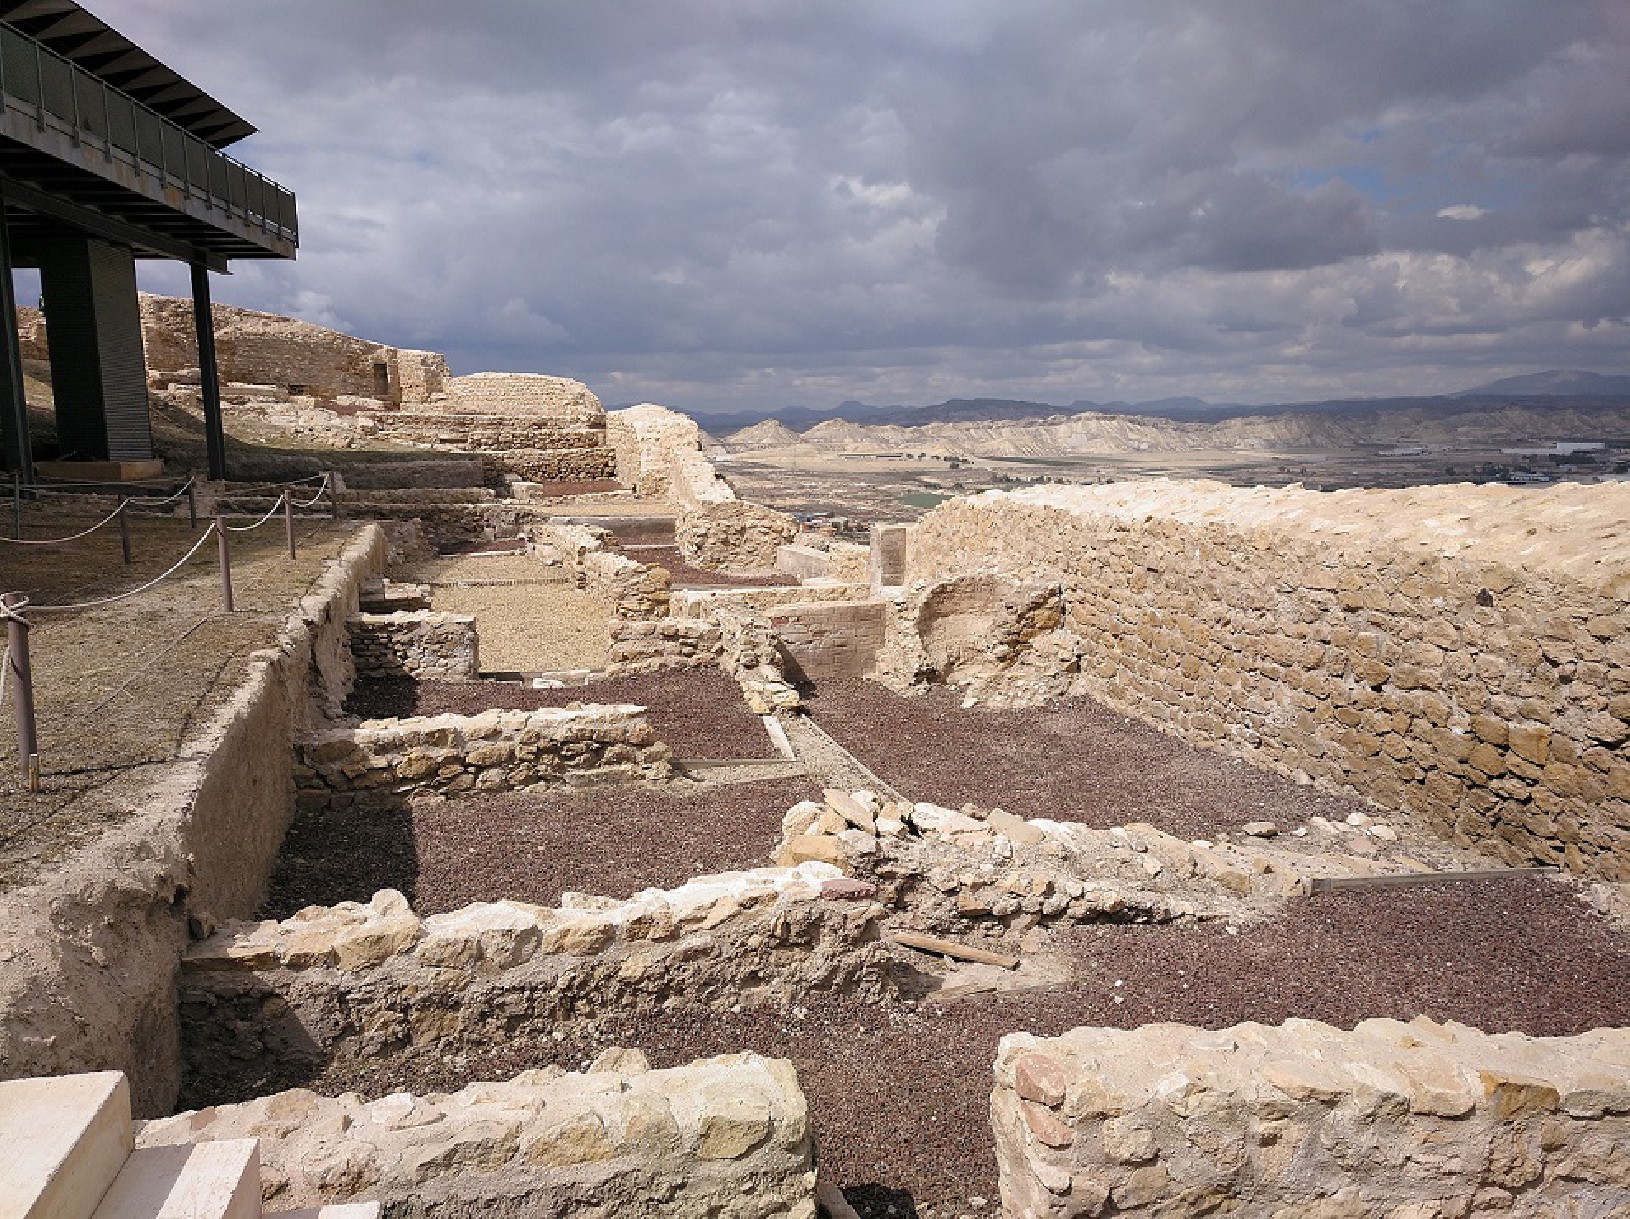 El Ayuntamiento de Lorca realizar trabajos de restauracin en el parque arqueologico de Lorca